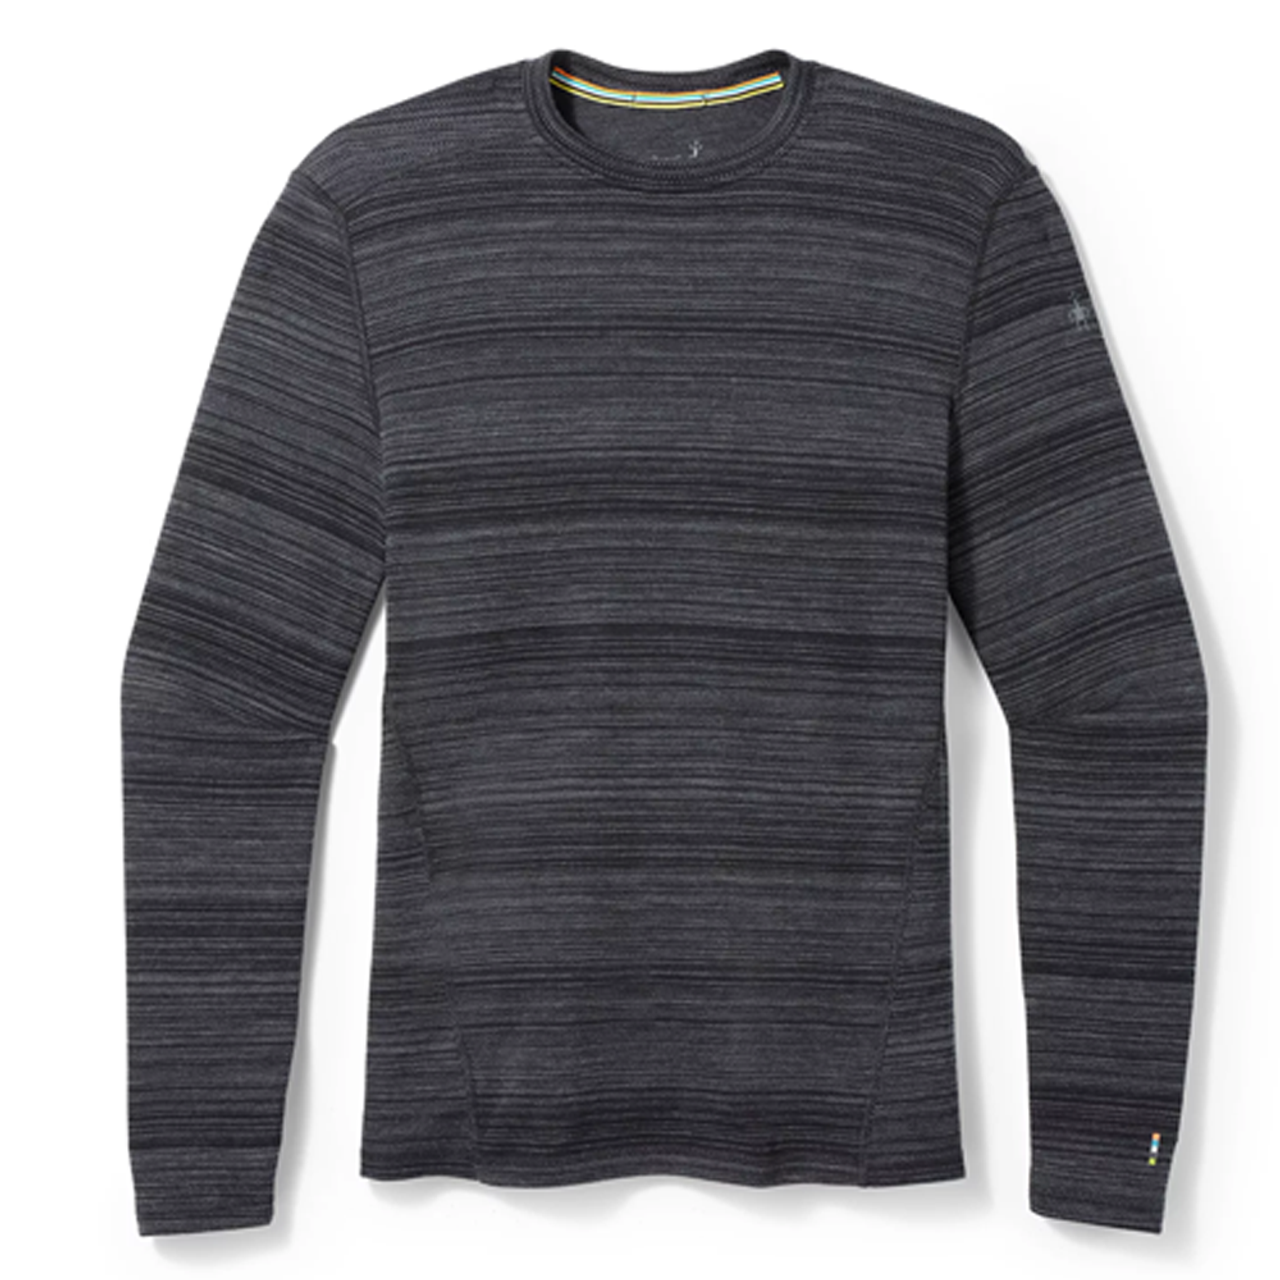 Men's 100% Merino Wool Base layer Thermal Long Sleeve Shirt Bottom